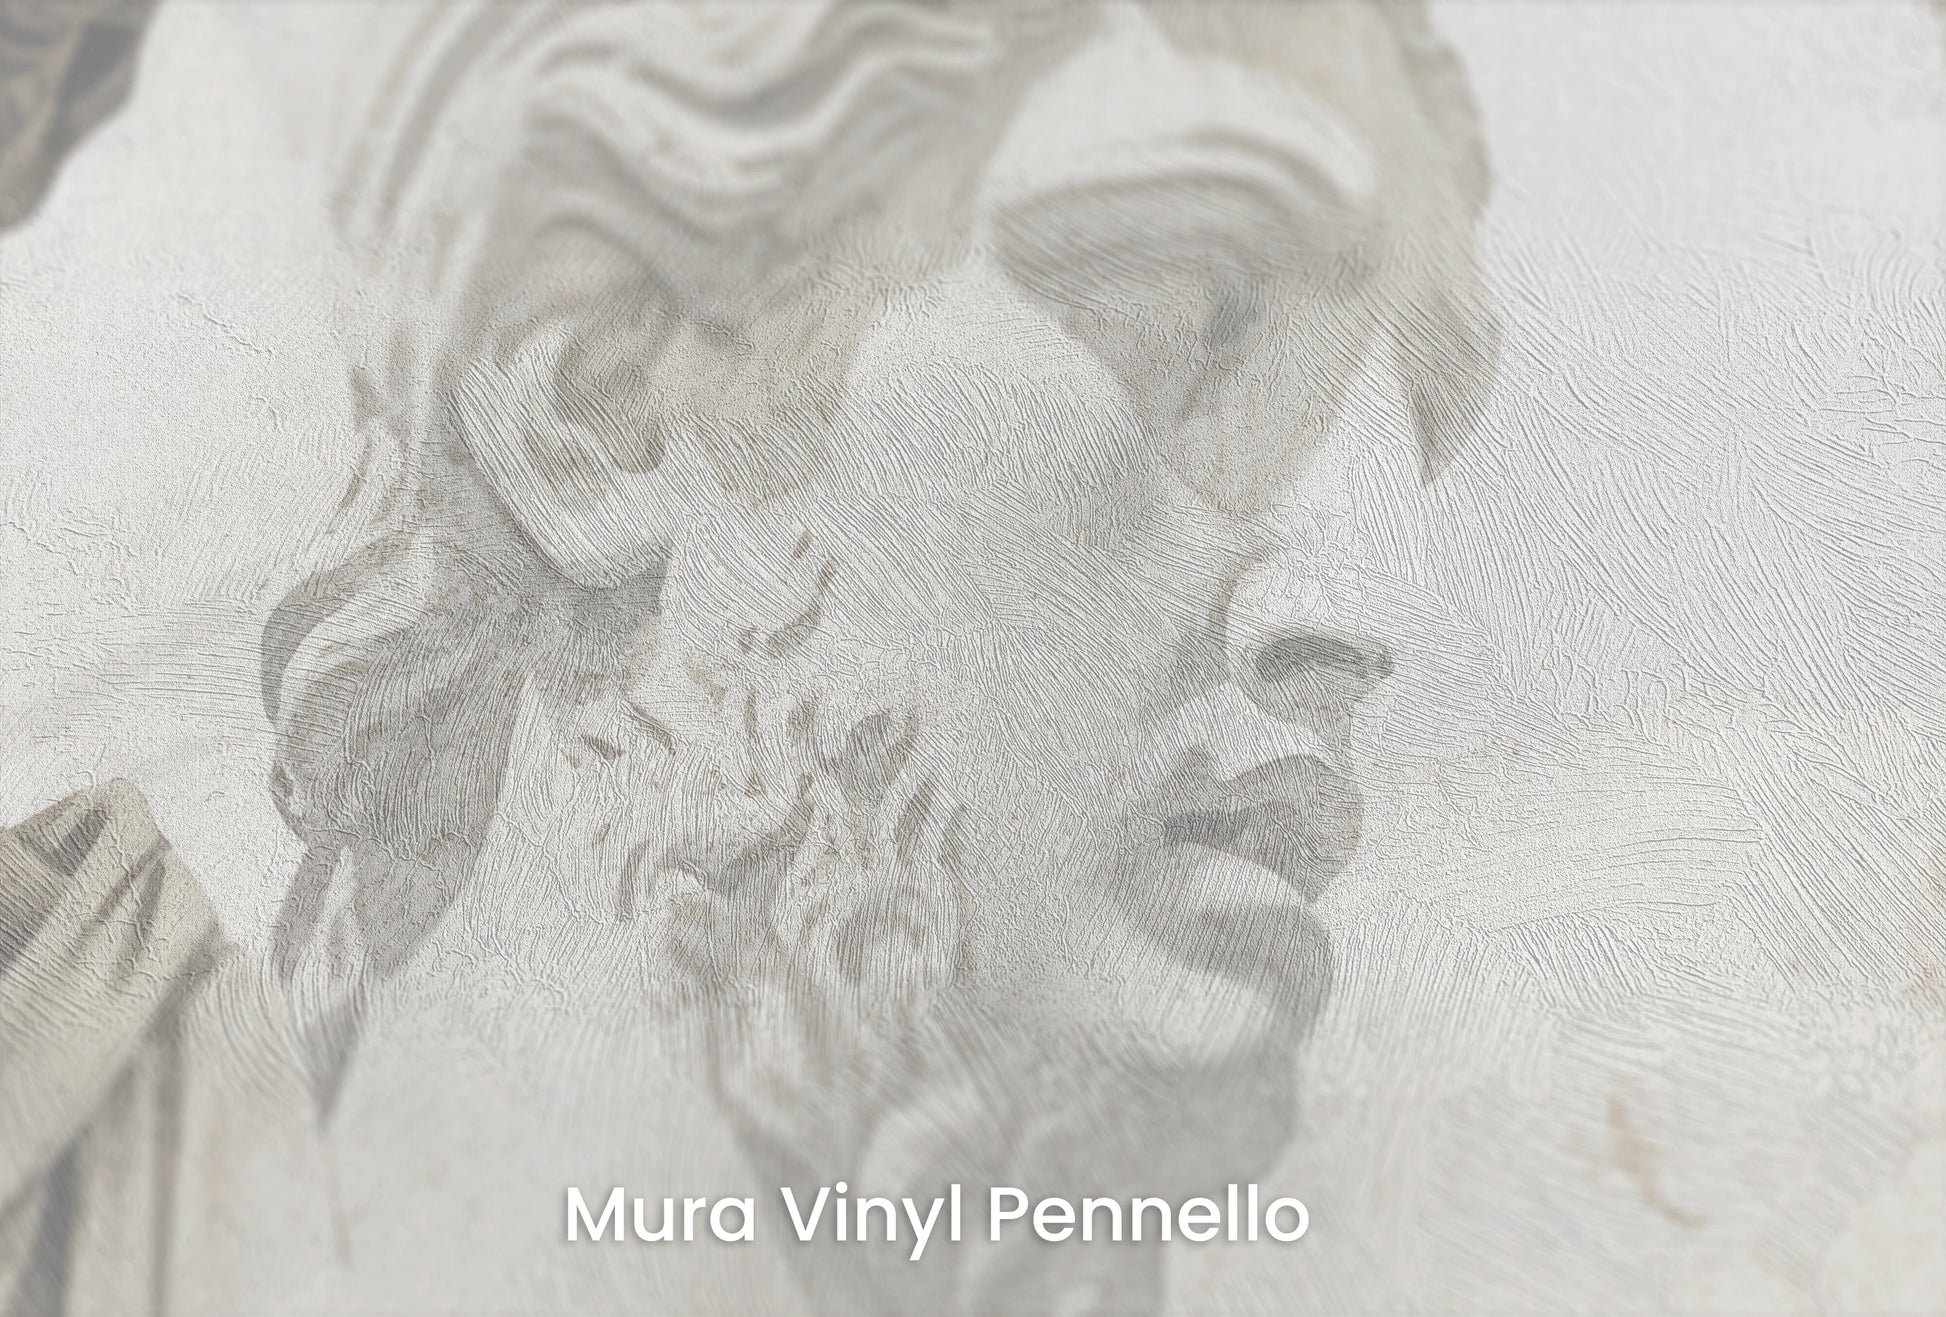 Zbliżenie na artystyczną fototapetę o nazwie Apollo's Contemplation na podłożu Mura Vinyl Pennello - faktura pociągnięć pędzla malarskiego.